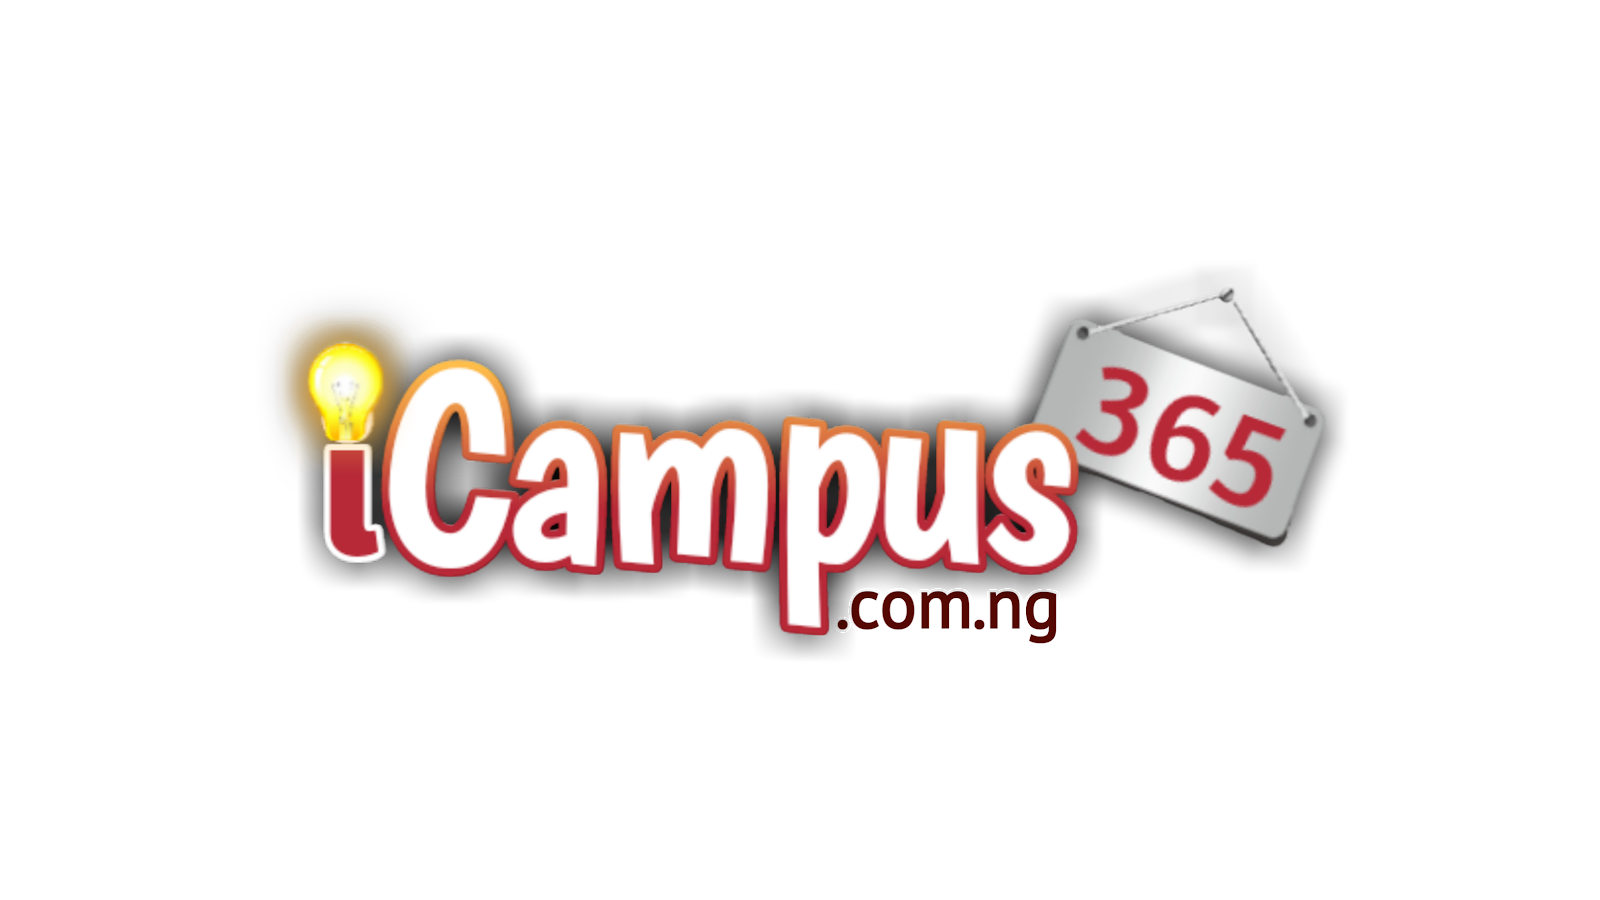 iCampus365